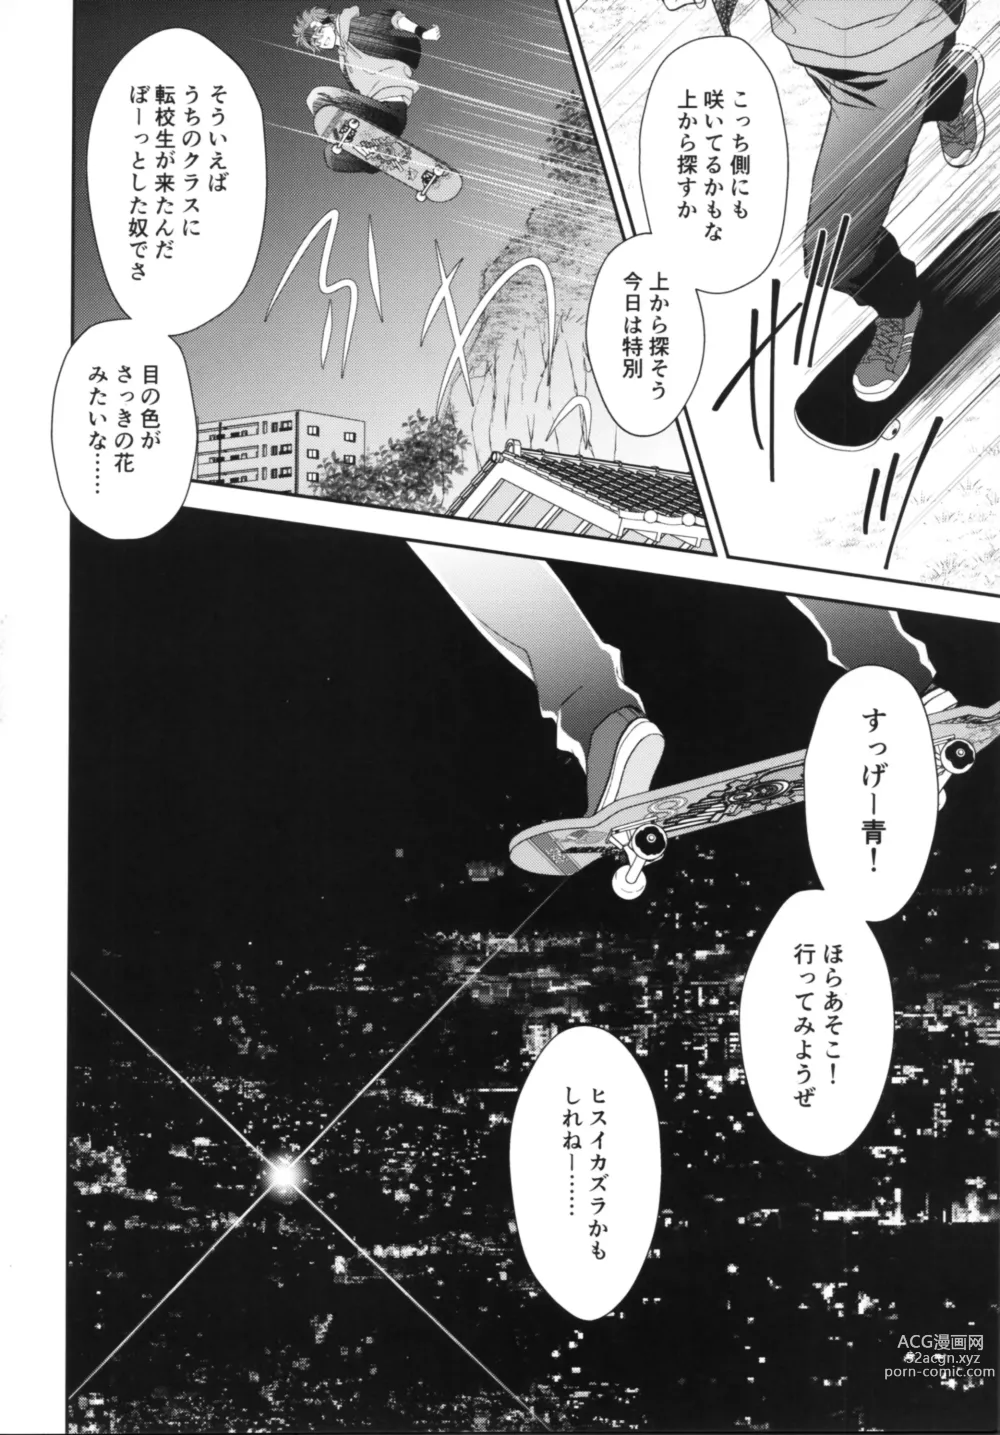 Page 3 of doujinshi Vampiro